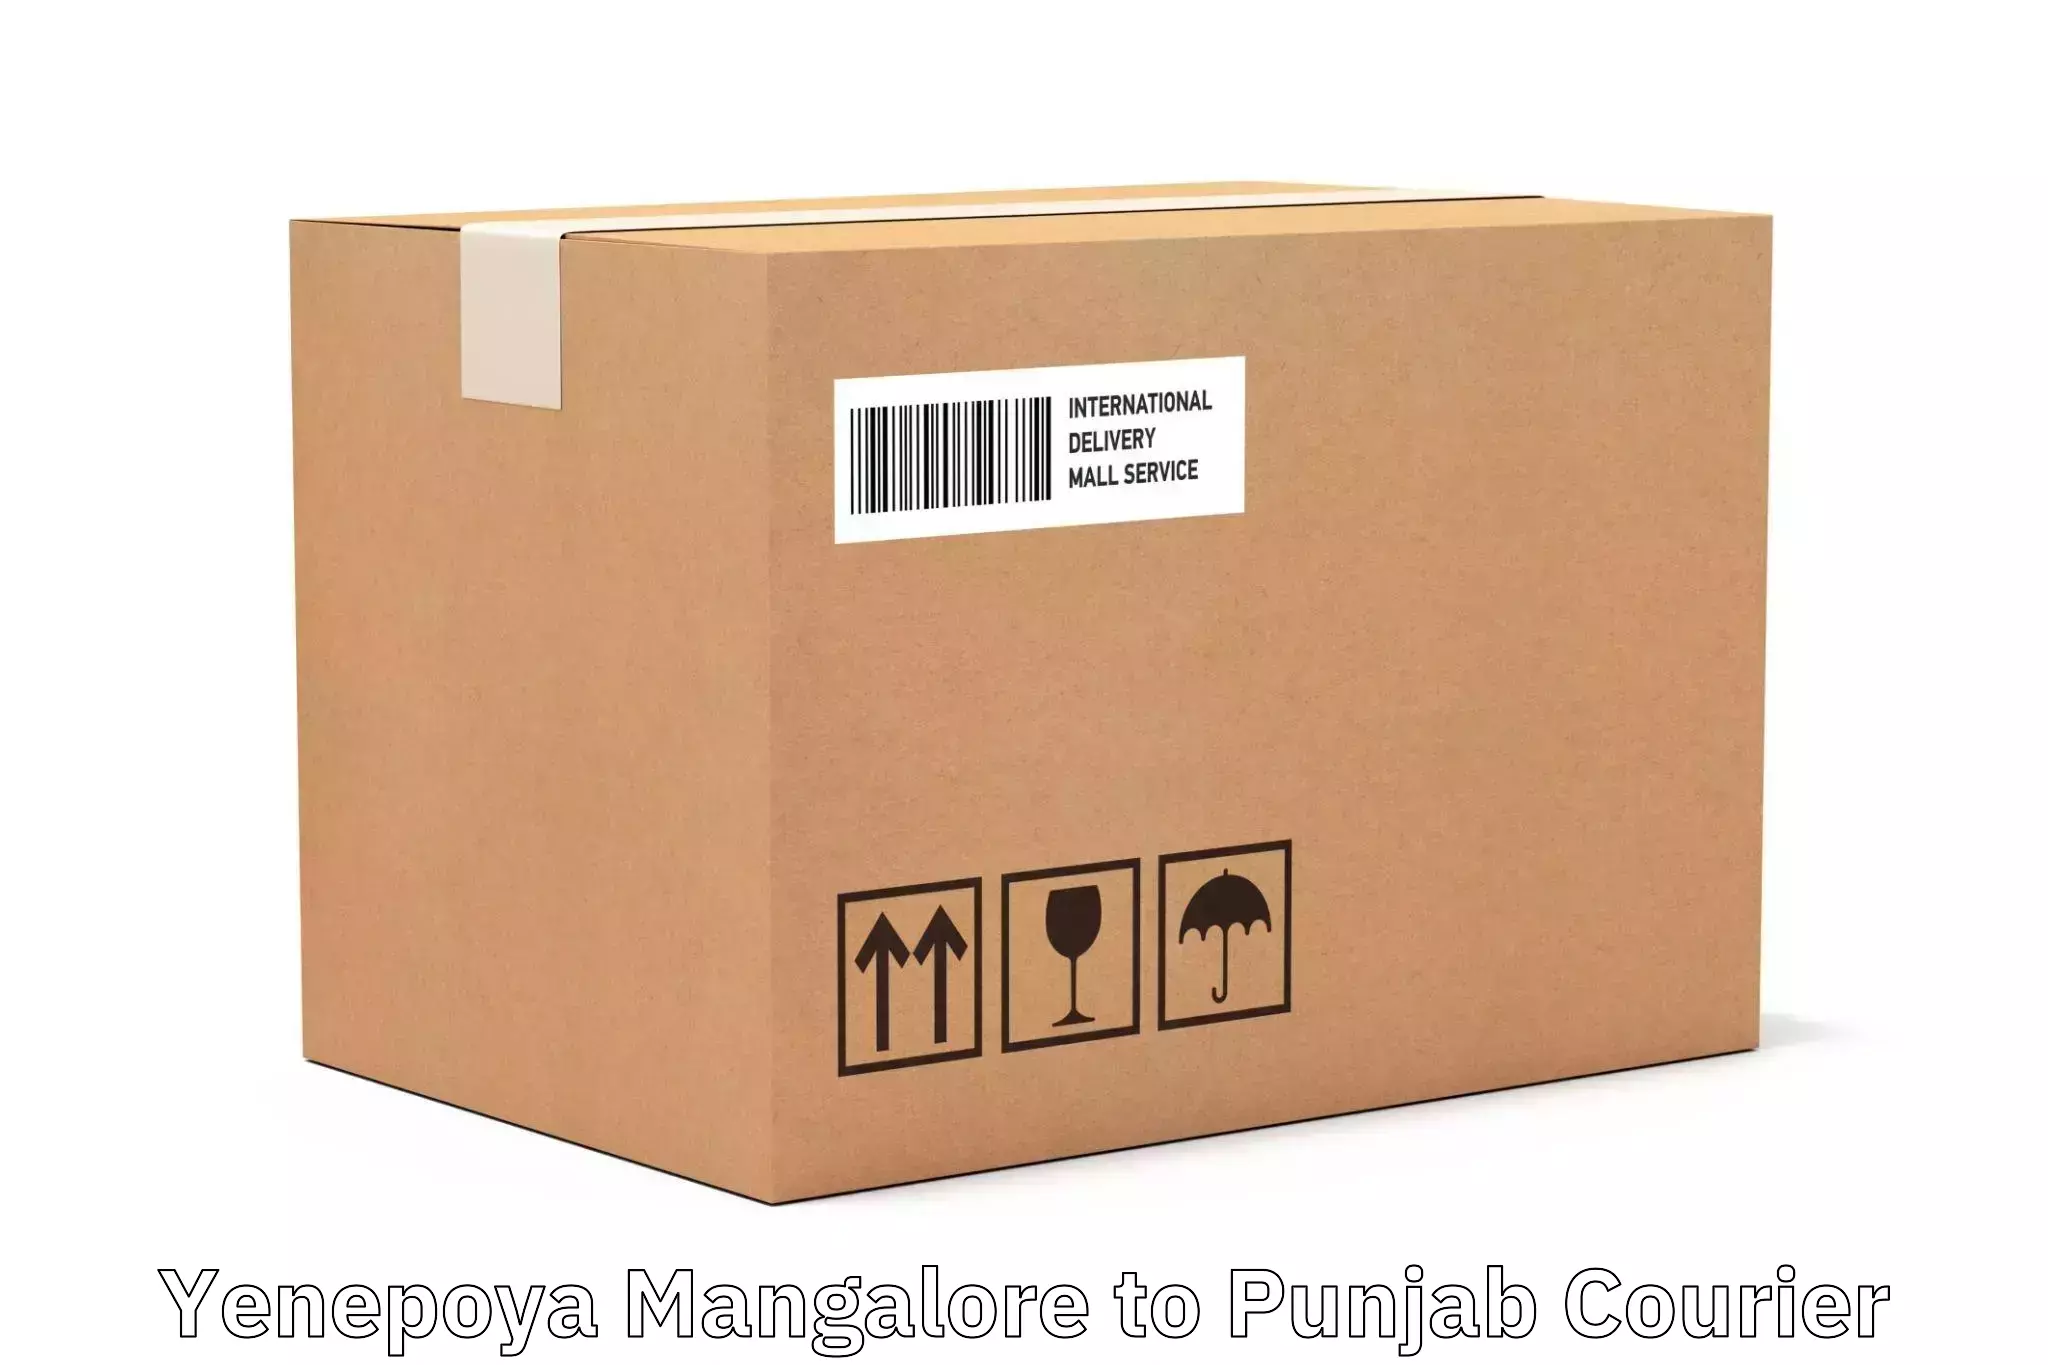 Courier service partnerships Yenepoya Mangalore to Punjab